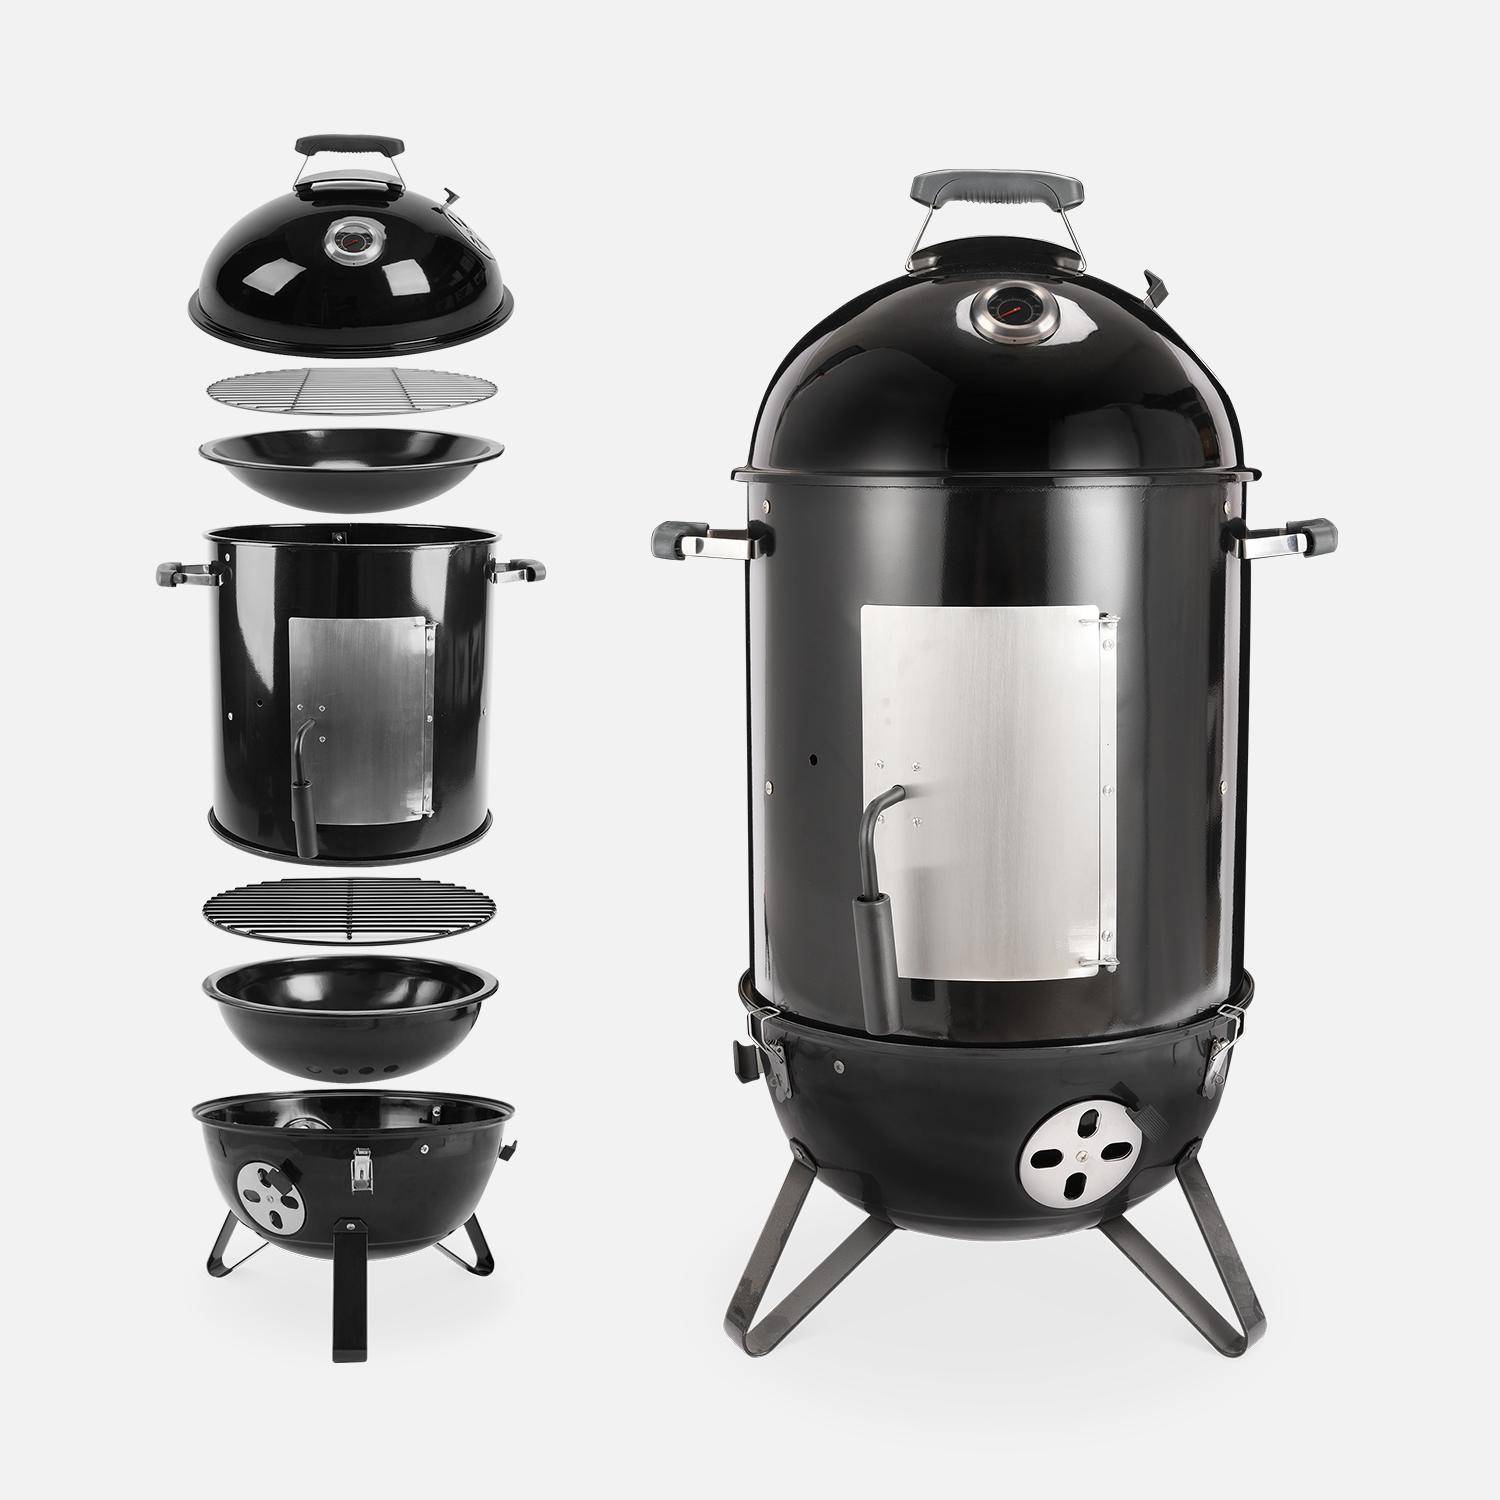 Barbacoa ahumador carbón – Juan – Smoker premium con aireadores, ahumador, gril, compartimento de ahumado negro Photo7